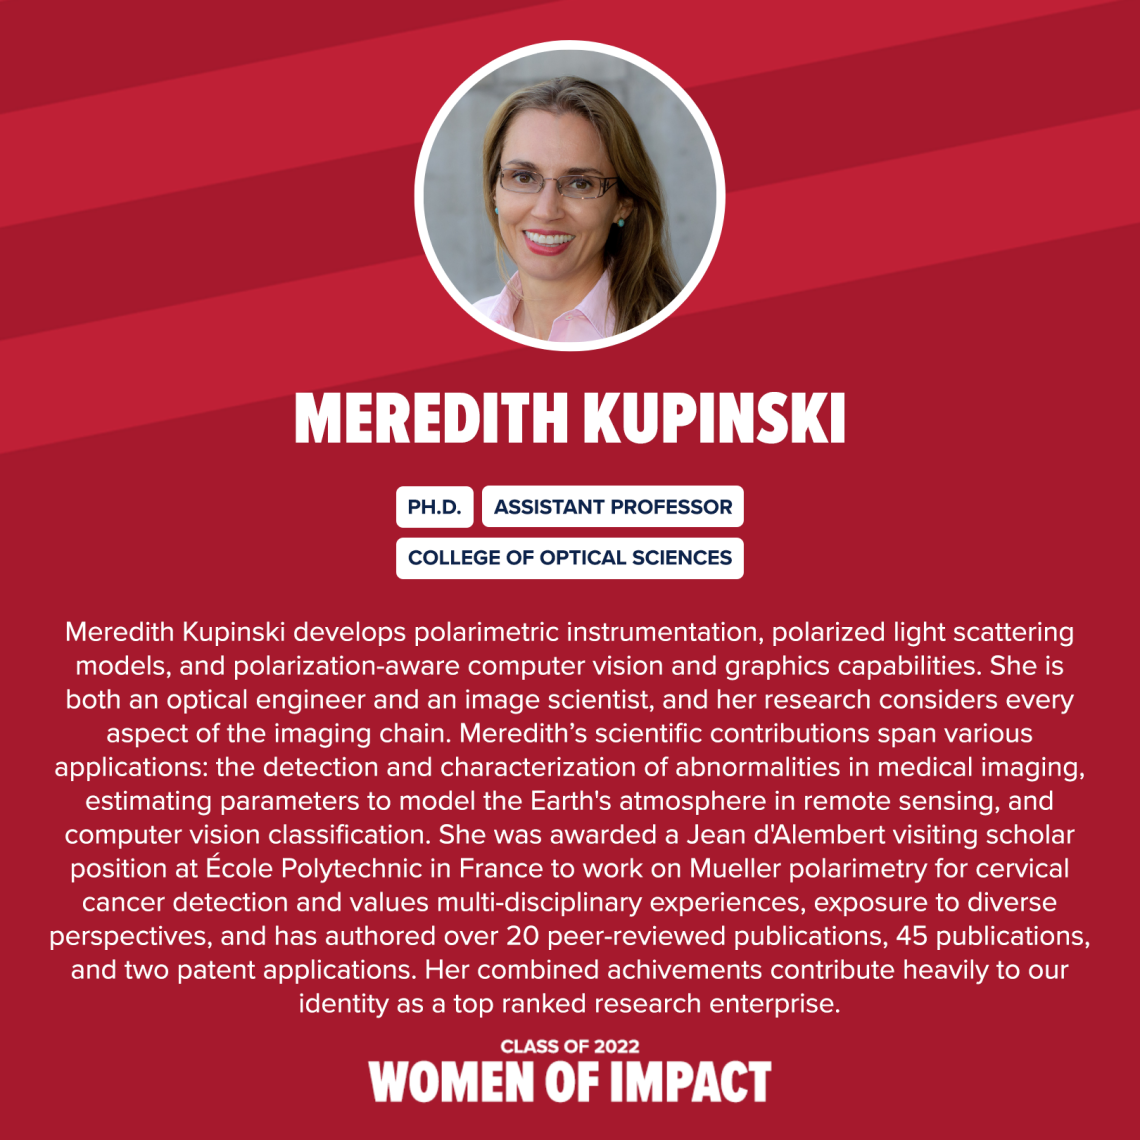 Meredith Kupinski